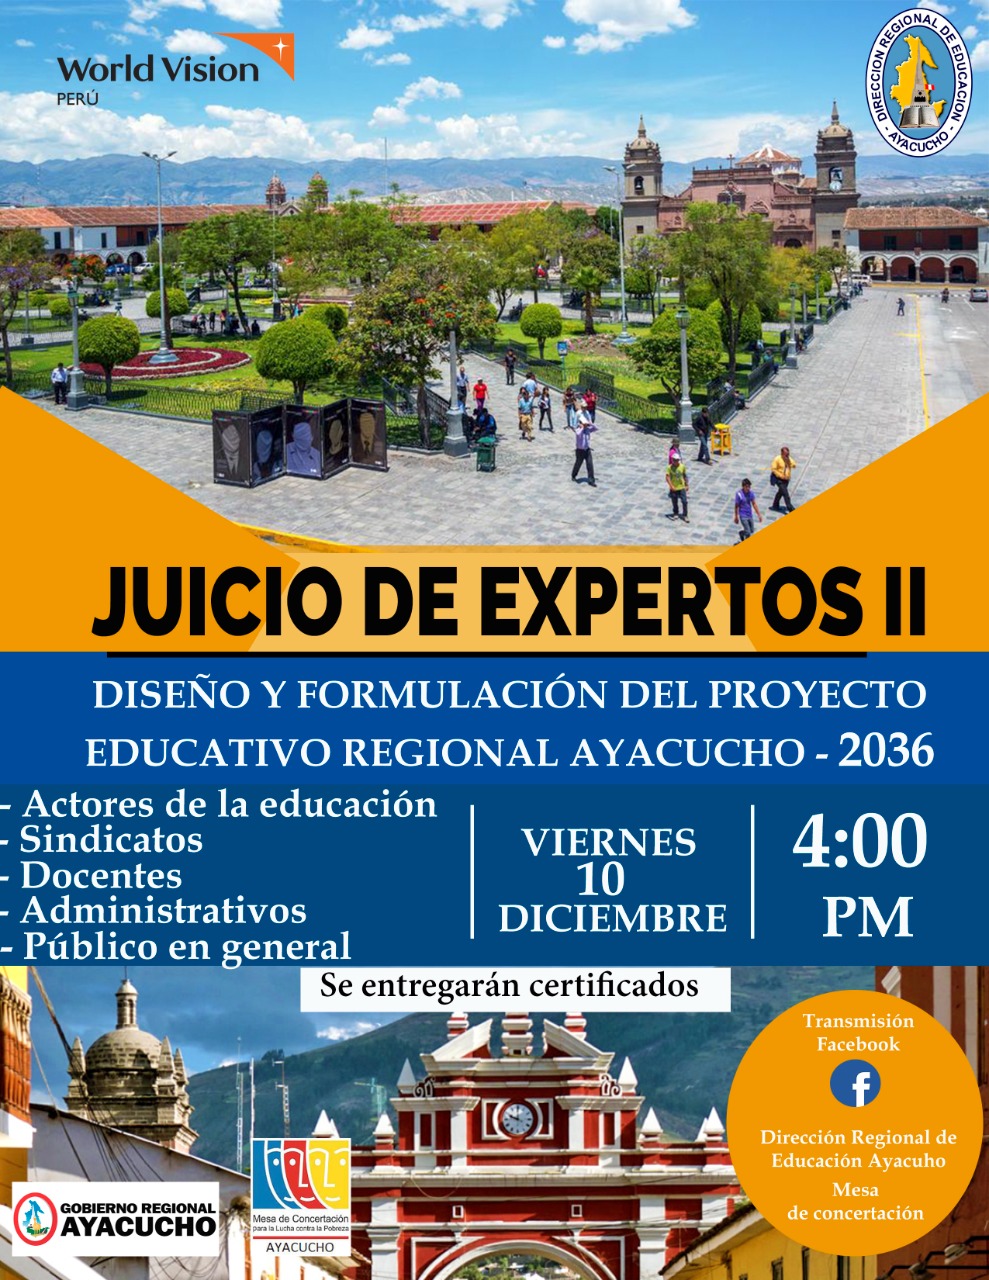 II JUICIO DE EXPERTOS NACIONALES EN EDUCACIÓN